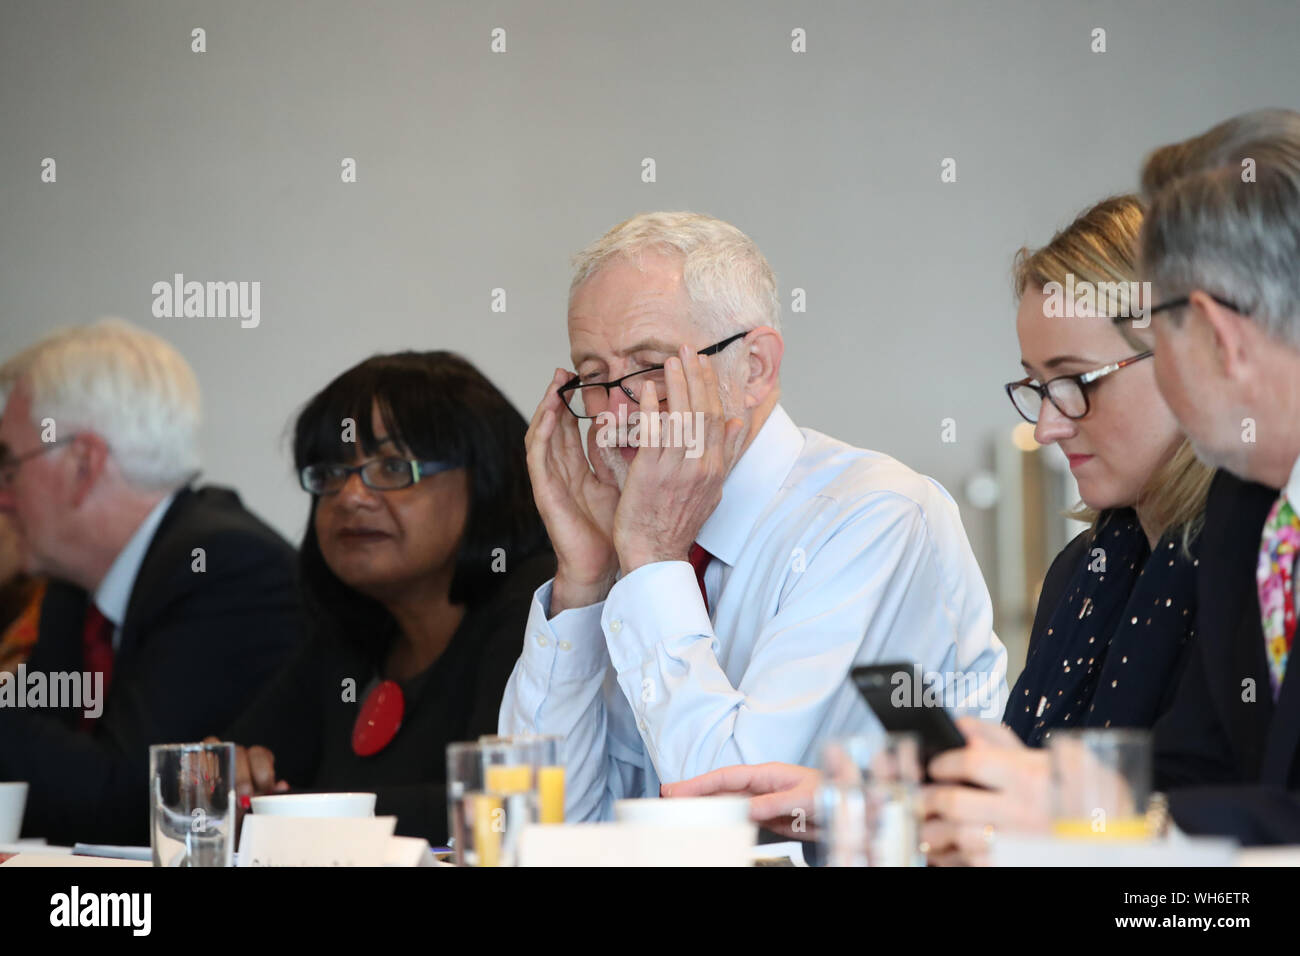 Leader du travail Jeremy Corbyn (centre) avec les membres de son cabinet fantôme dans le théâtre Lowry dans la région de Salford Quays, Manchester lors d'une réunion du cabinet fantôme. Banque D'Images